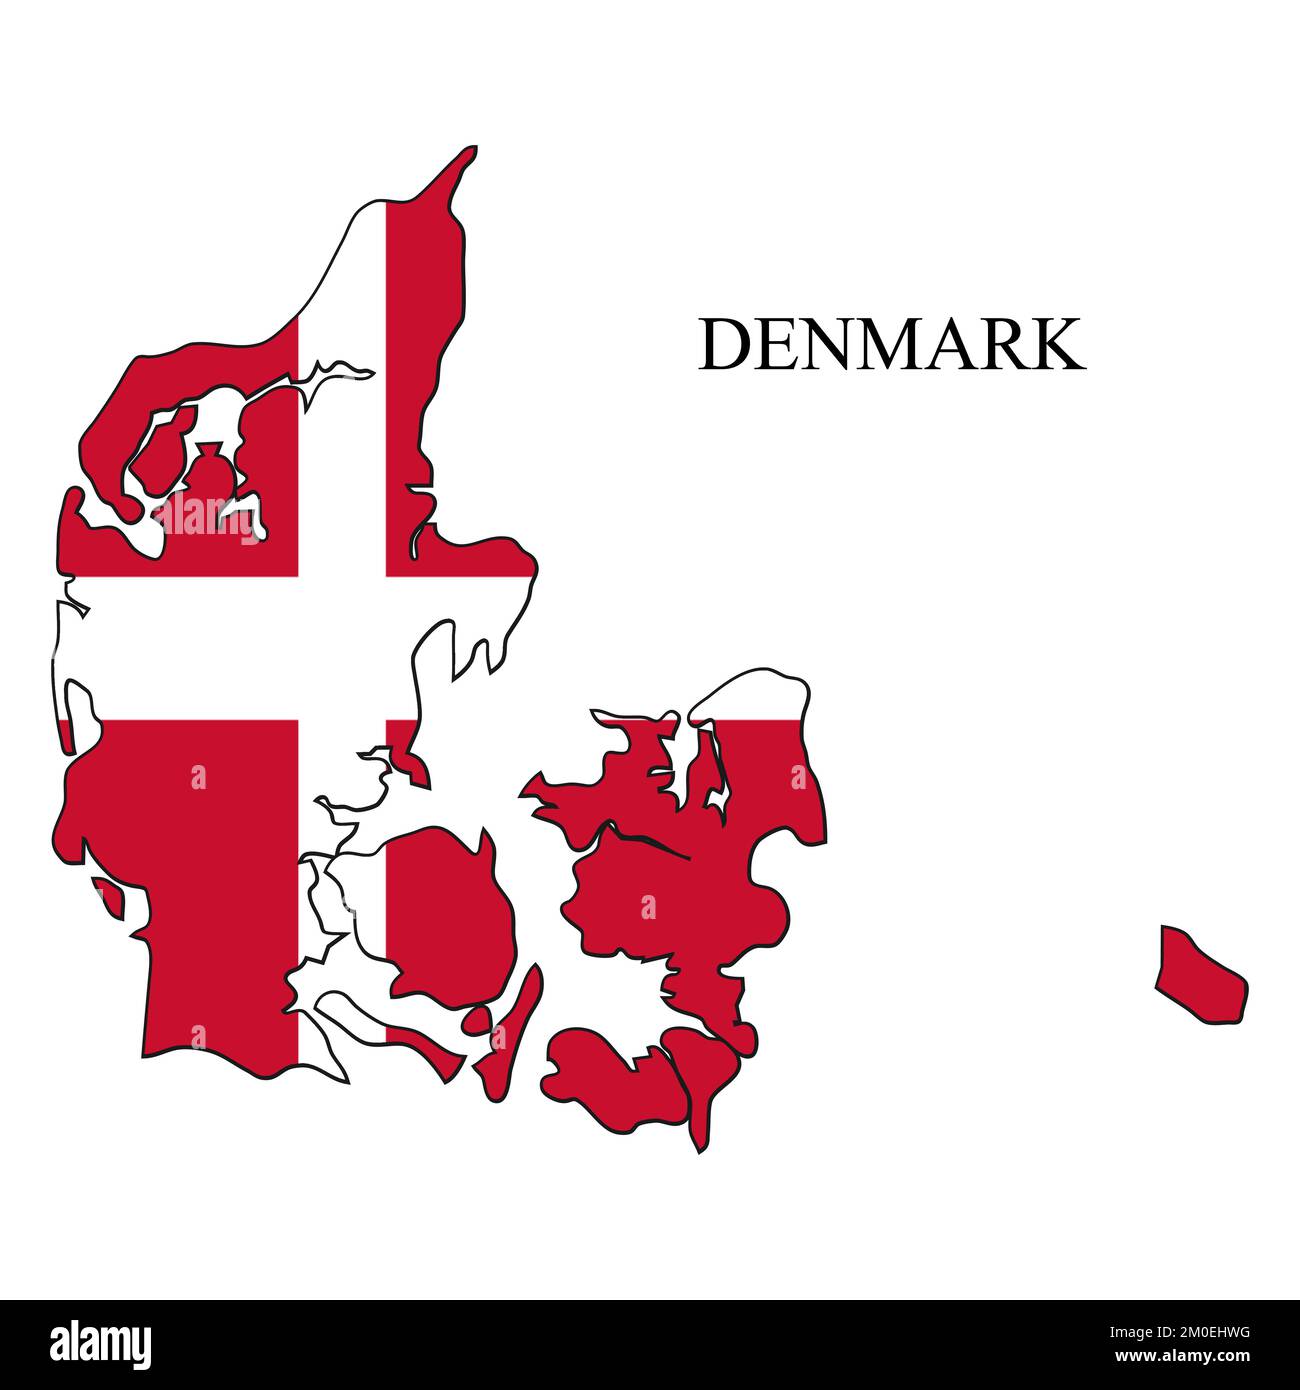 Illustrazione del vettore cartografico della Danimarca. Economia globale. Paese famoso. Nord Europa. Europa. Regione scandinava. Illustrazione Vettoriale